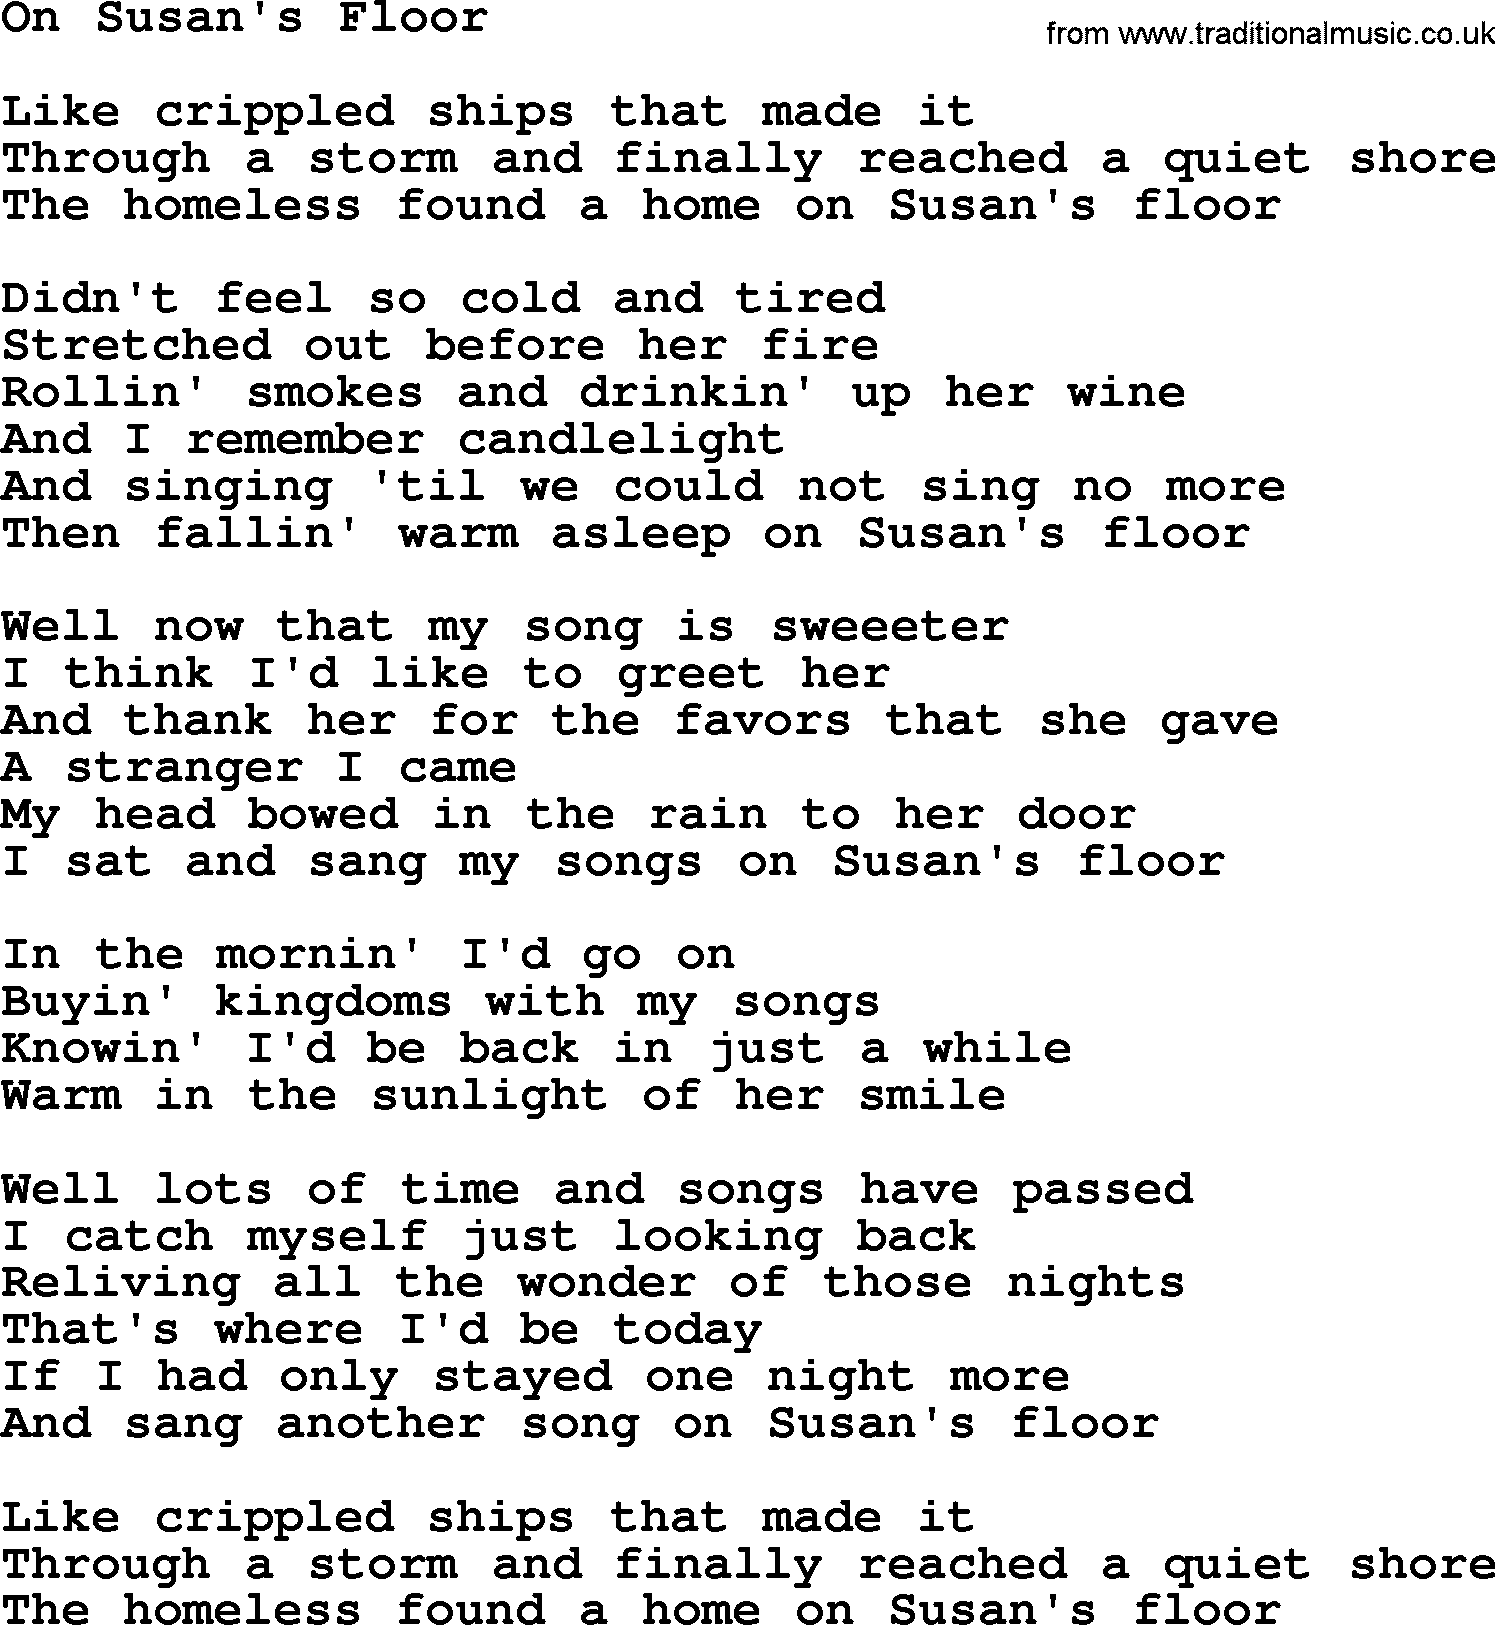 Gordon Lightfoot song On Susan's Floor, lyrics